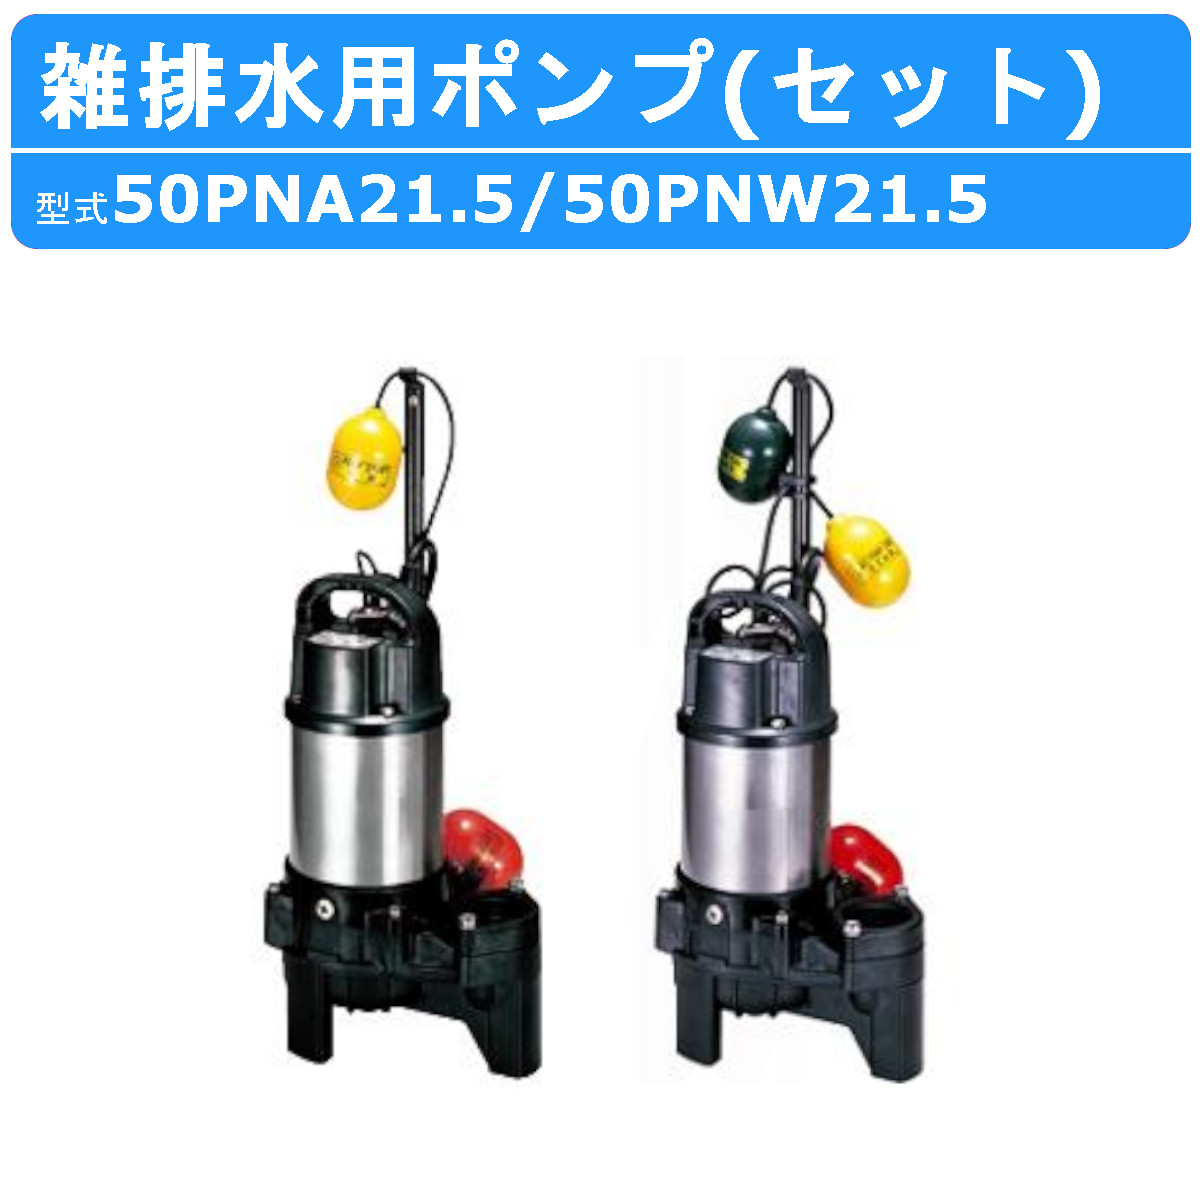 50PNA21.5]ツルミポンプ 樹脂製雑排水用水中ハイスピンポンプ 自動形